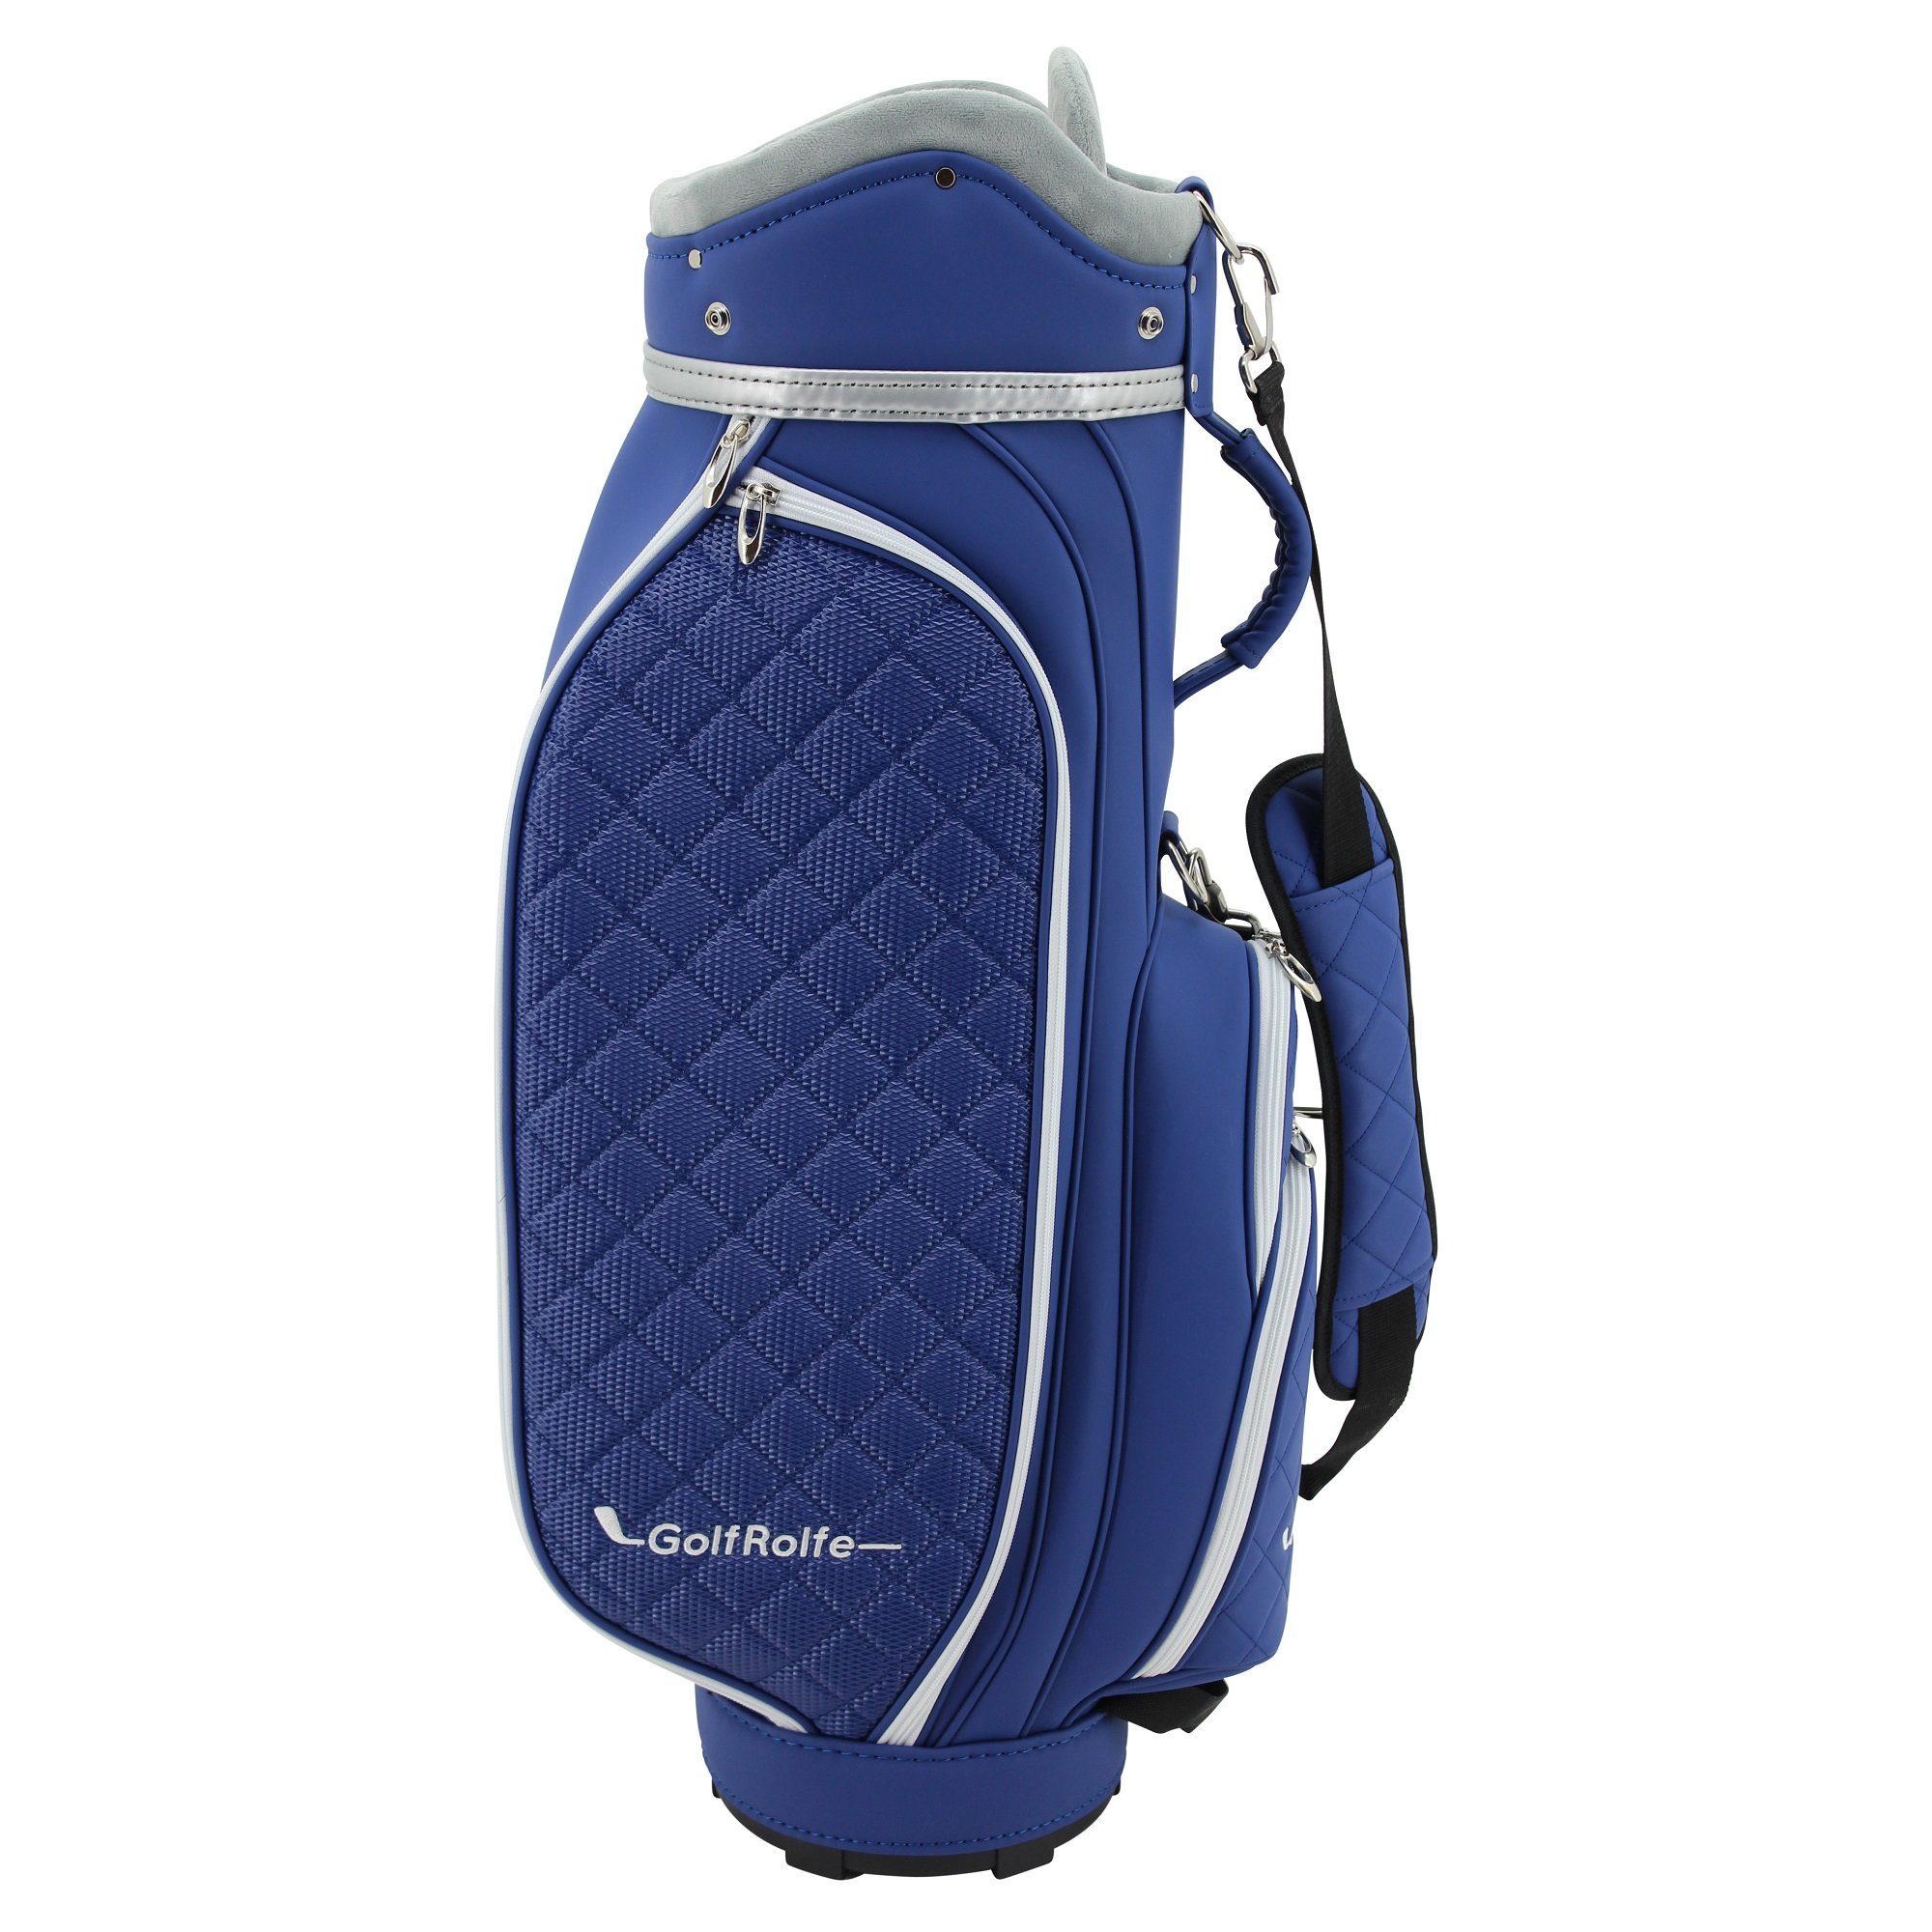 GolfRolfe Golfballtasche GolfRolfe 14293 Golfbag - Golftasche Caddybag blau Design